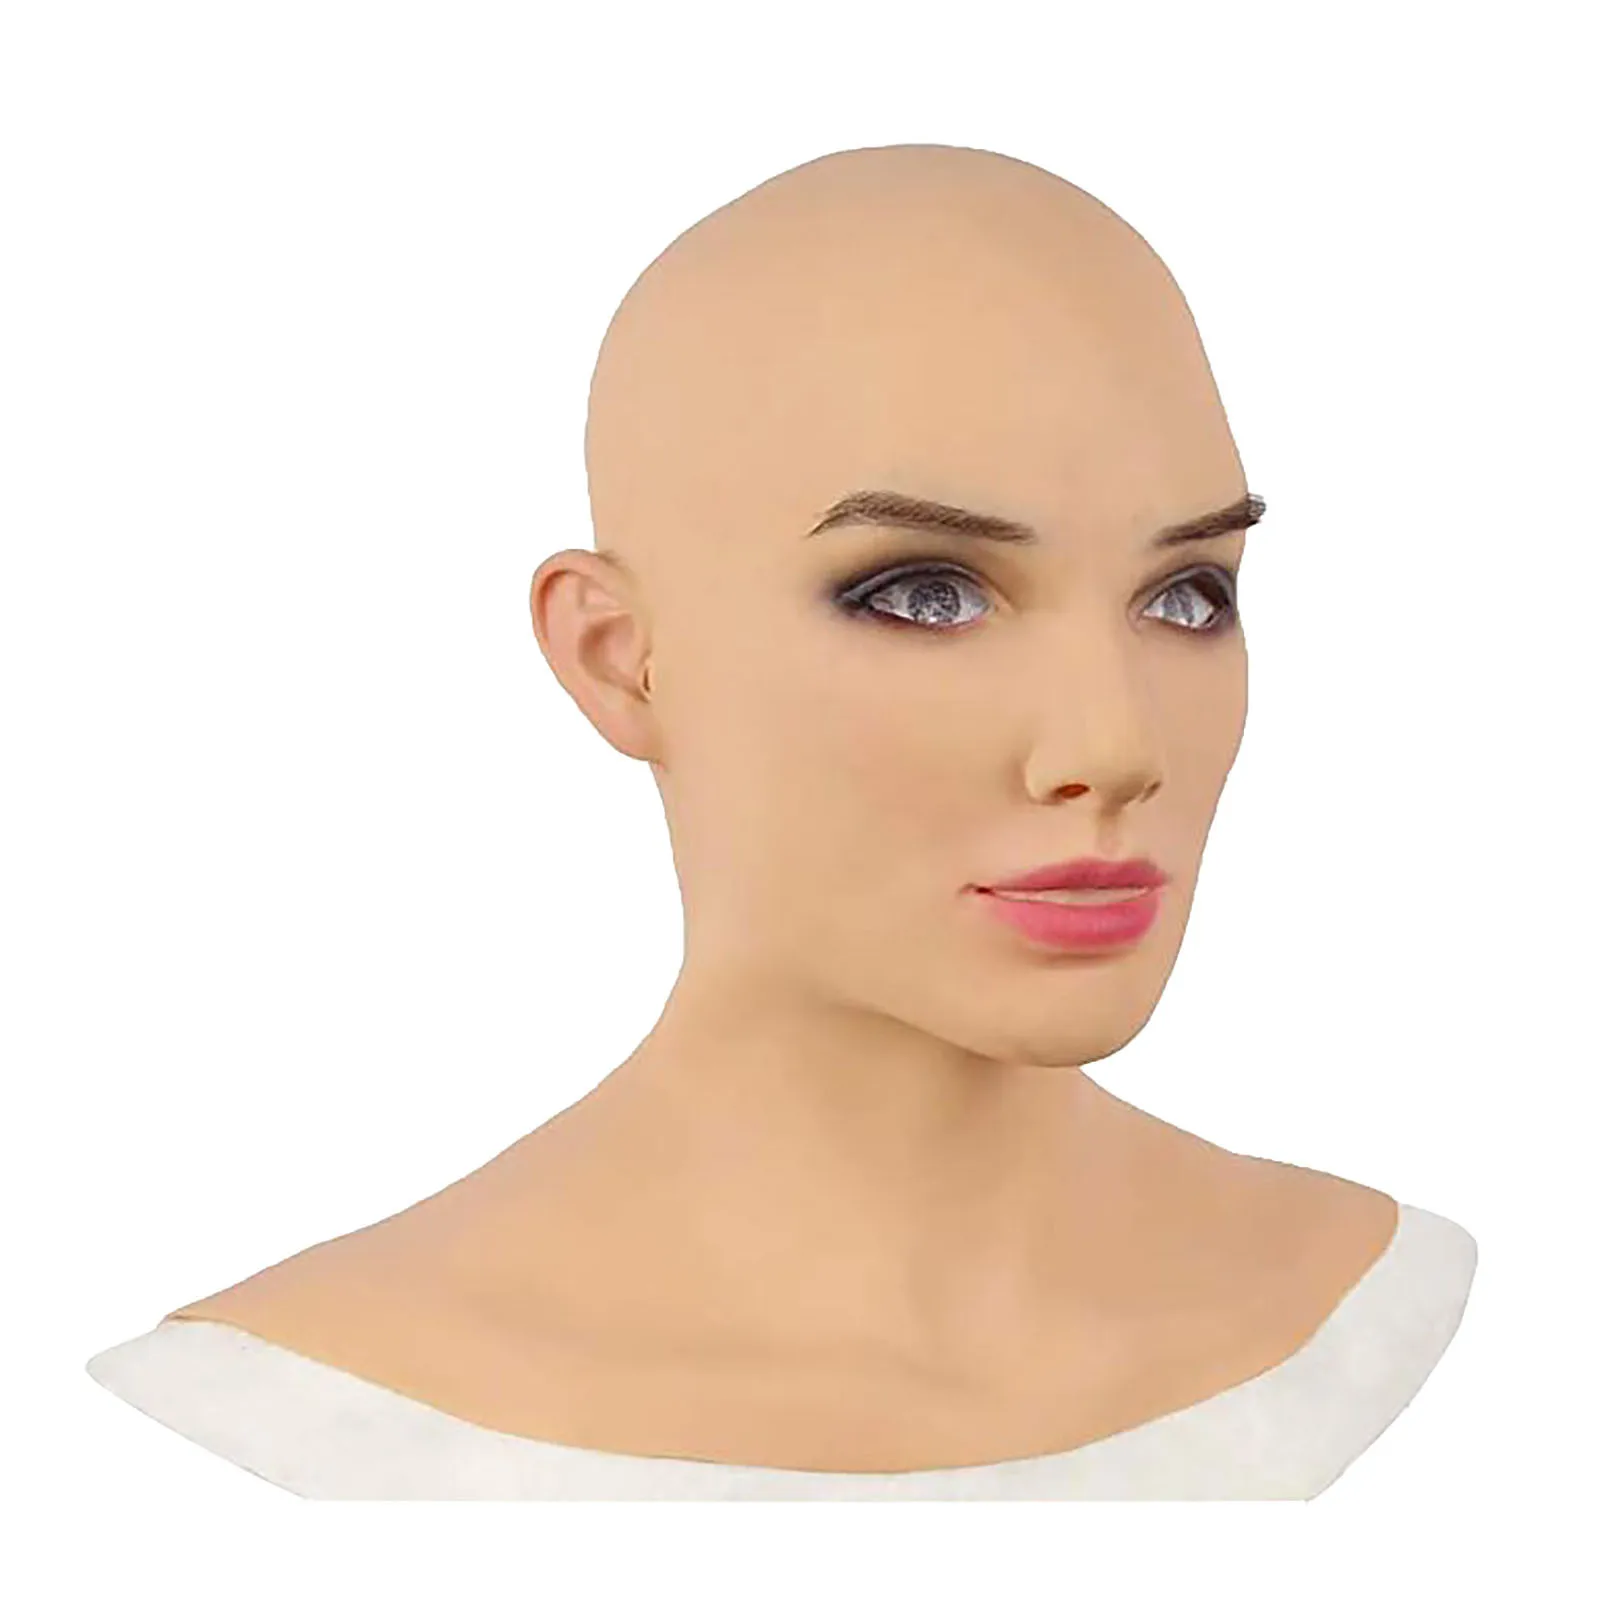 Maschera a testa piena per adulti di alta qualità a forma femminile in Silicone Crossdresser copricapo Halloween Cosplay accessorio Masque Horreur